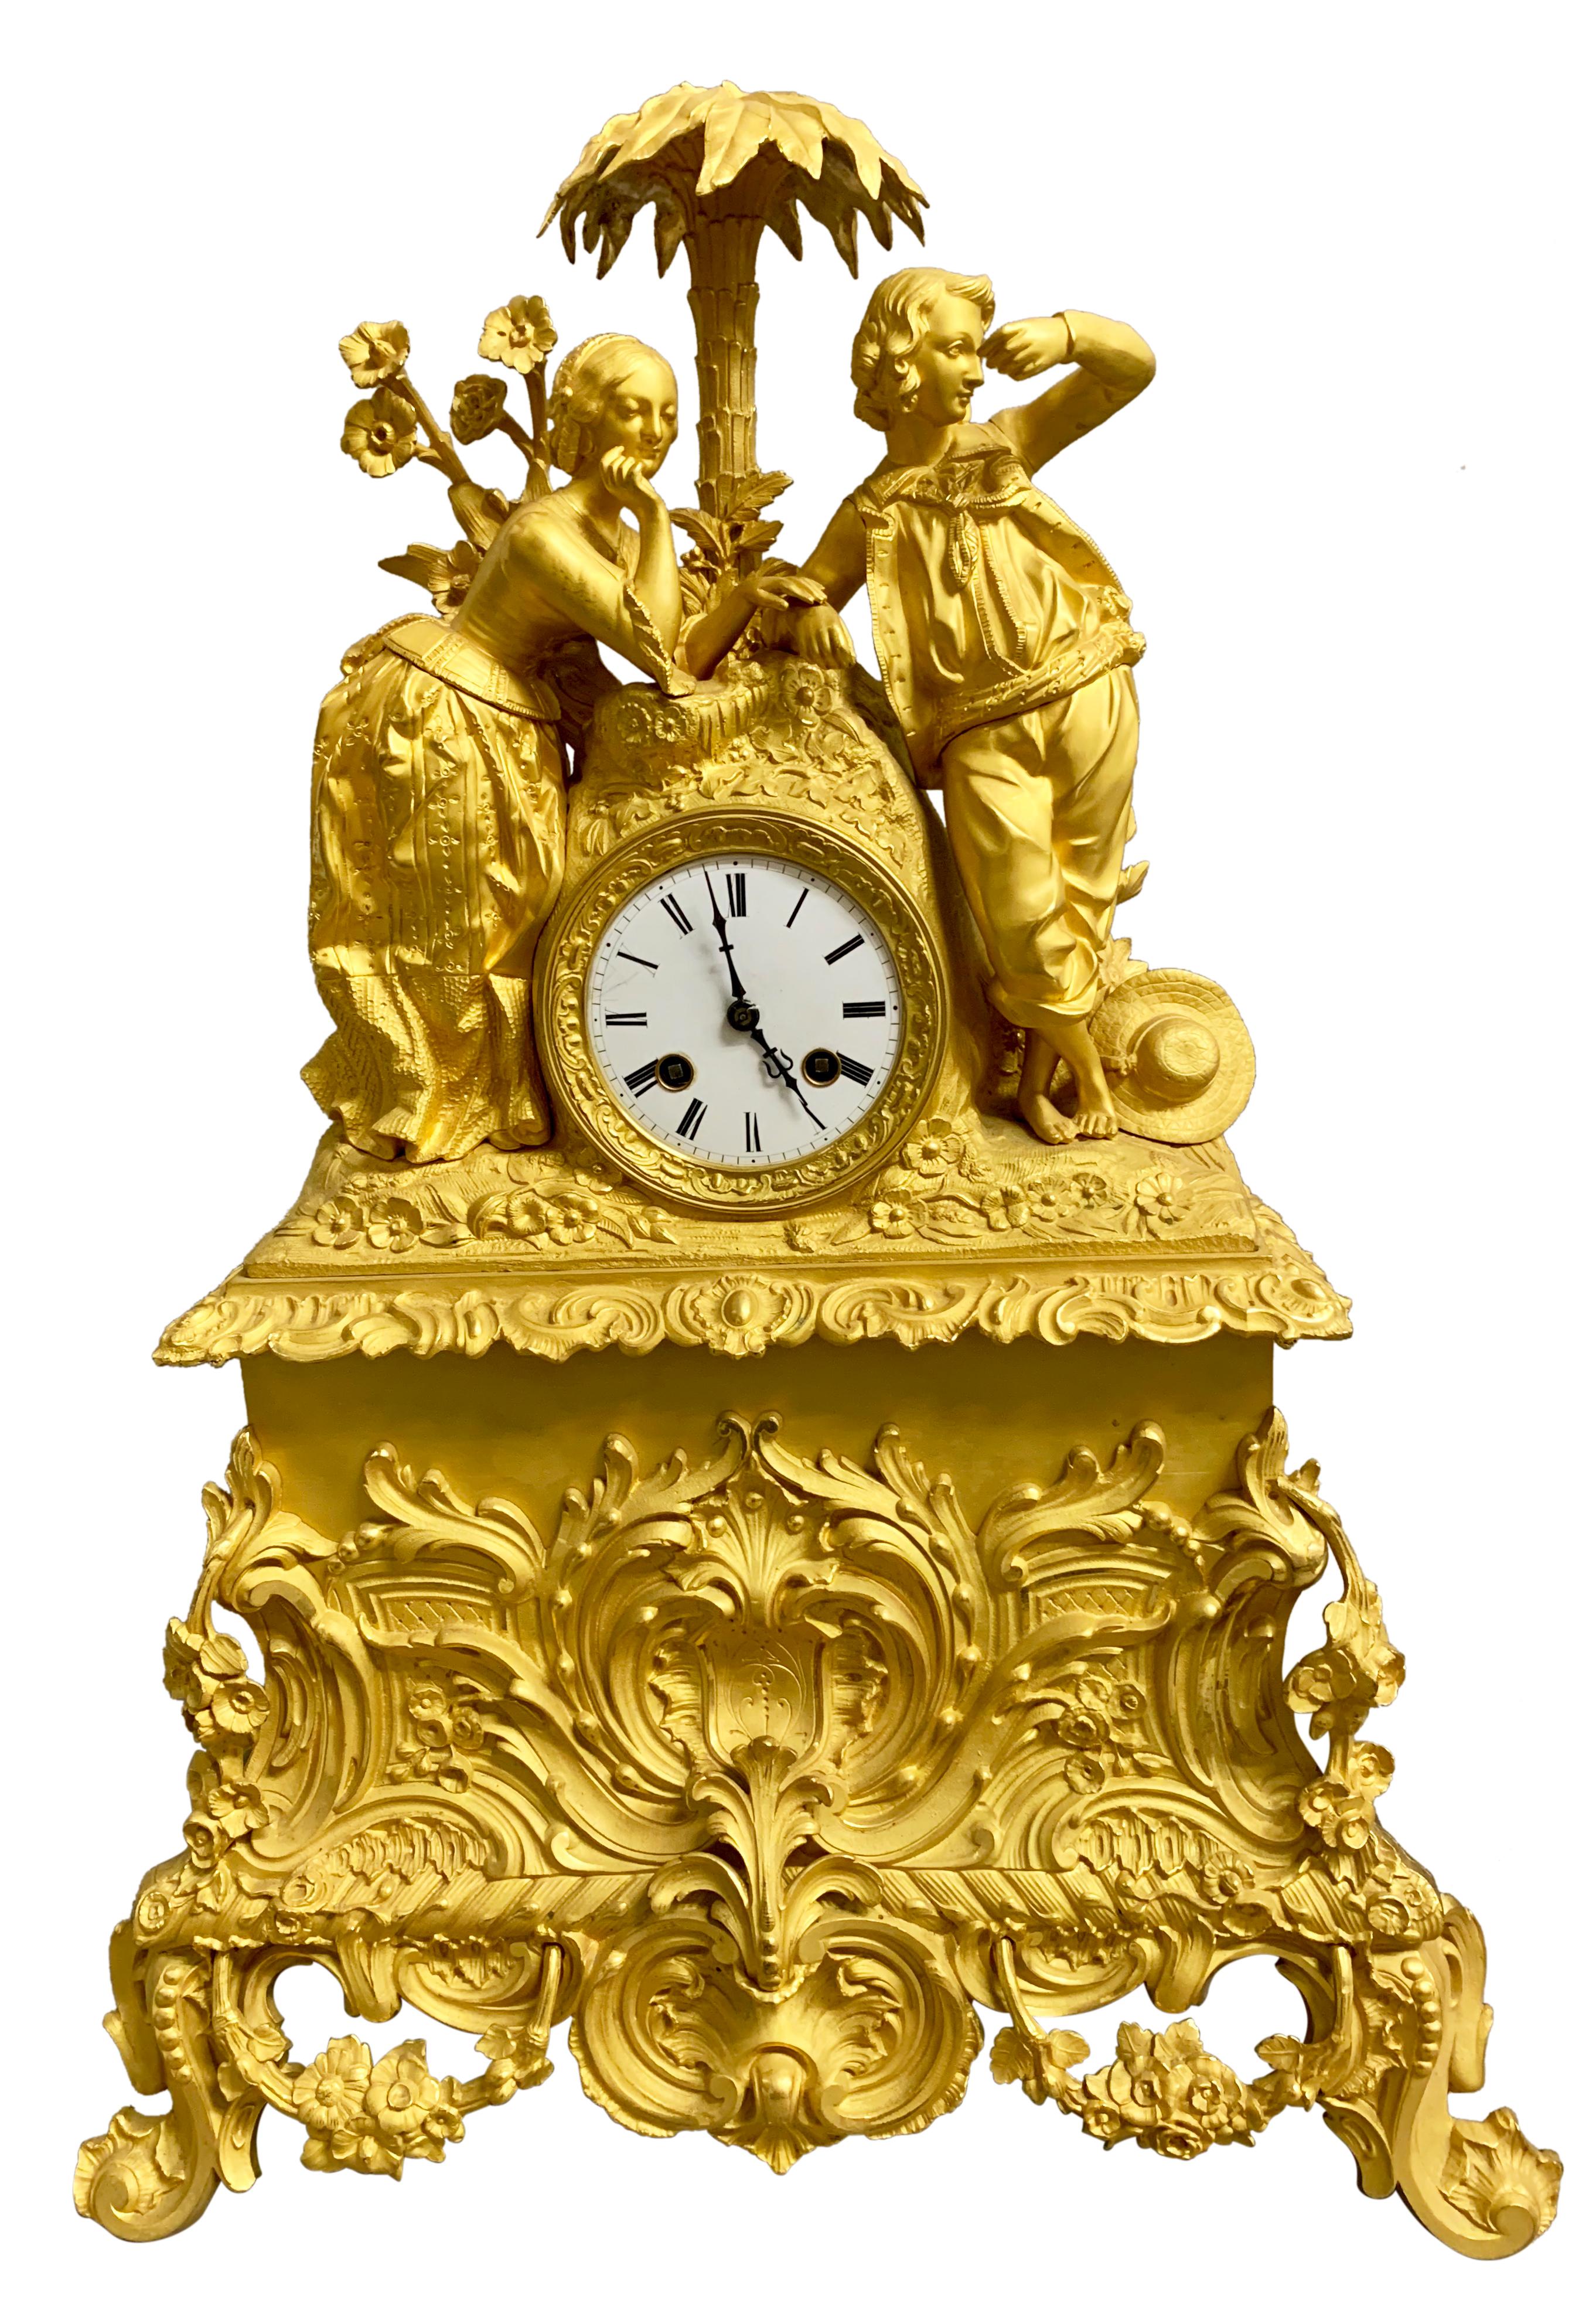 Pendule de cheminée en bronze doré d'époque Charles X. La caisse de tambour est flanquée d'un jeune couple debout sous un palmier avec des fleurs tout autour, tandis que la dame touche la main de l'homme.
La superbe et originale horloge en bronze